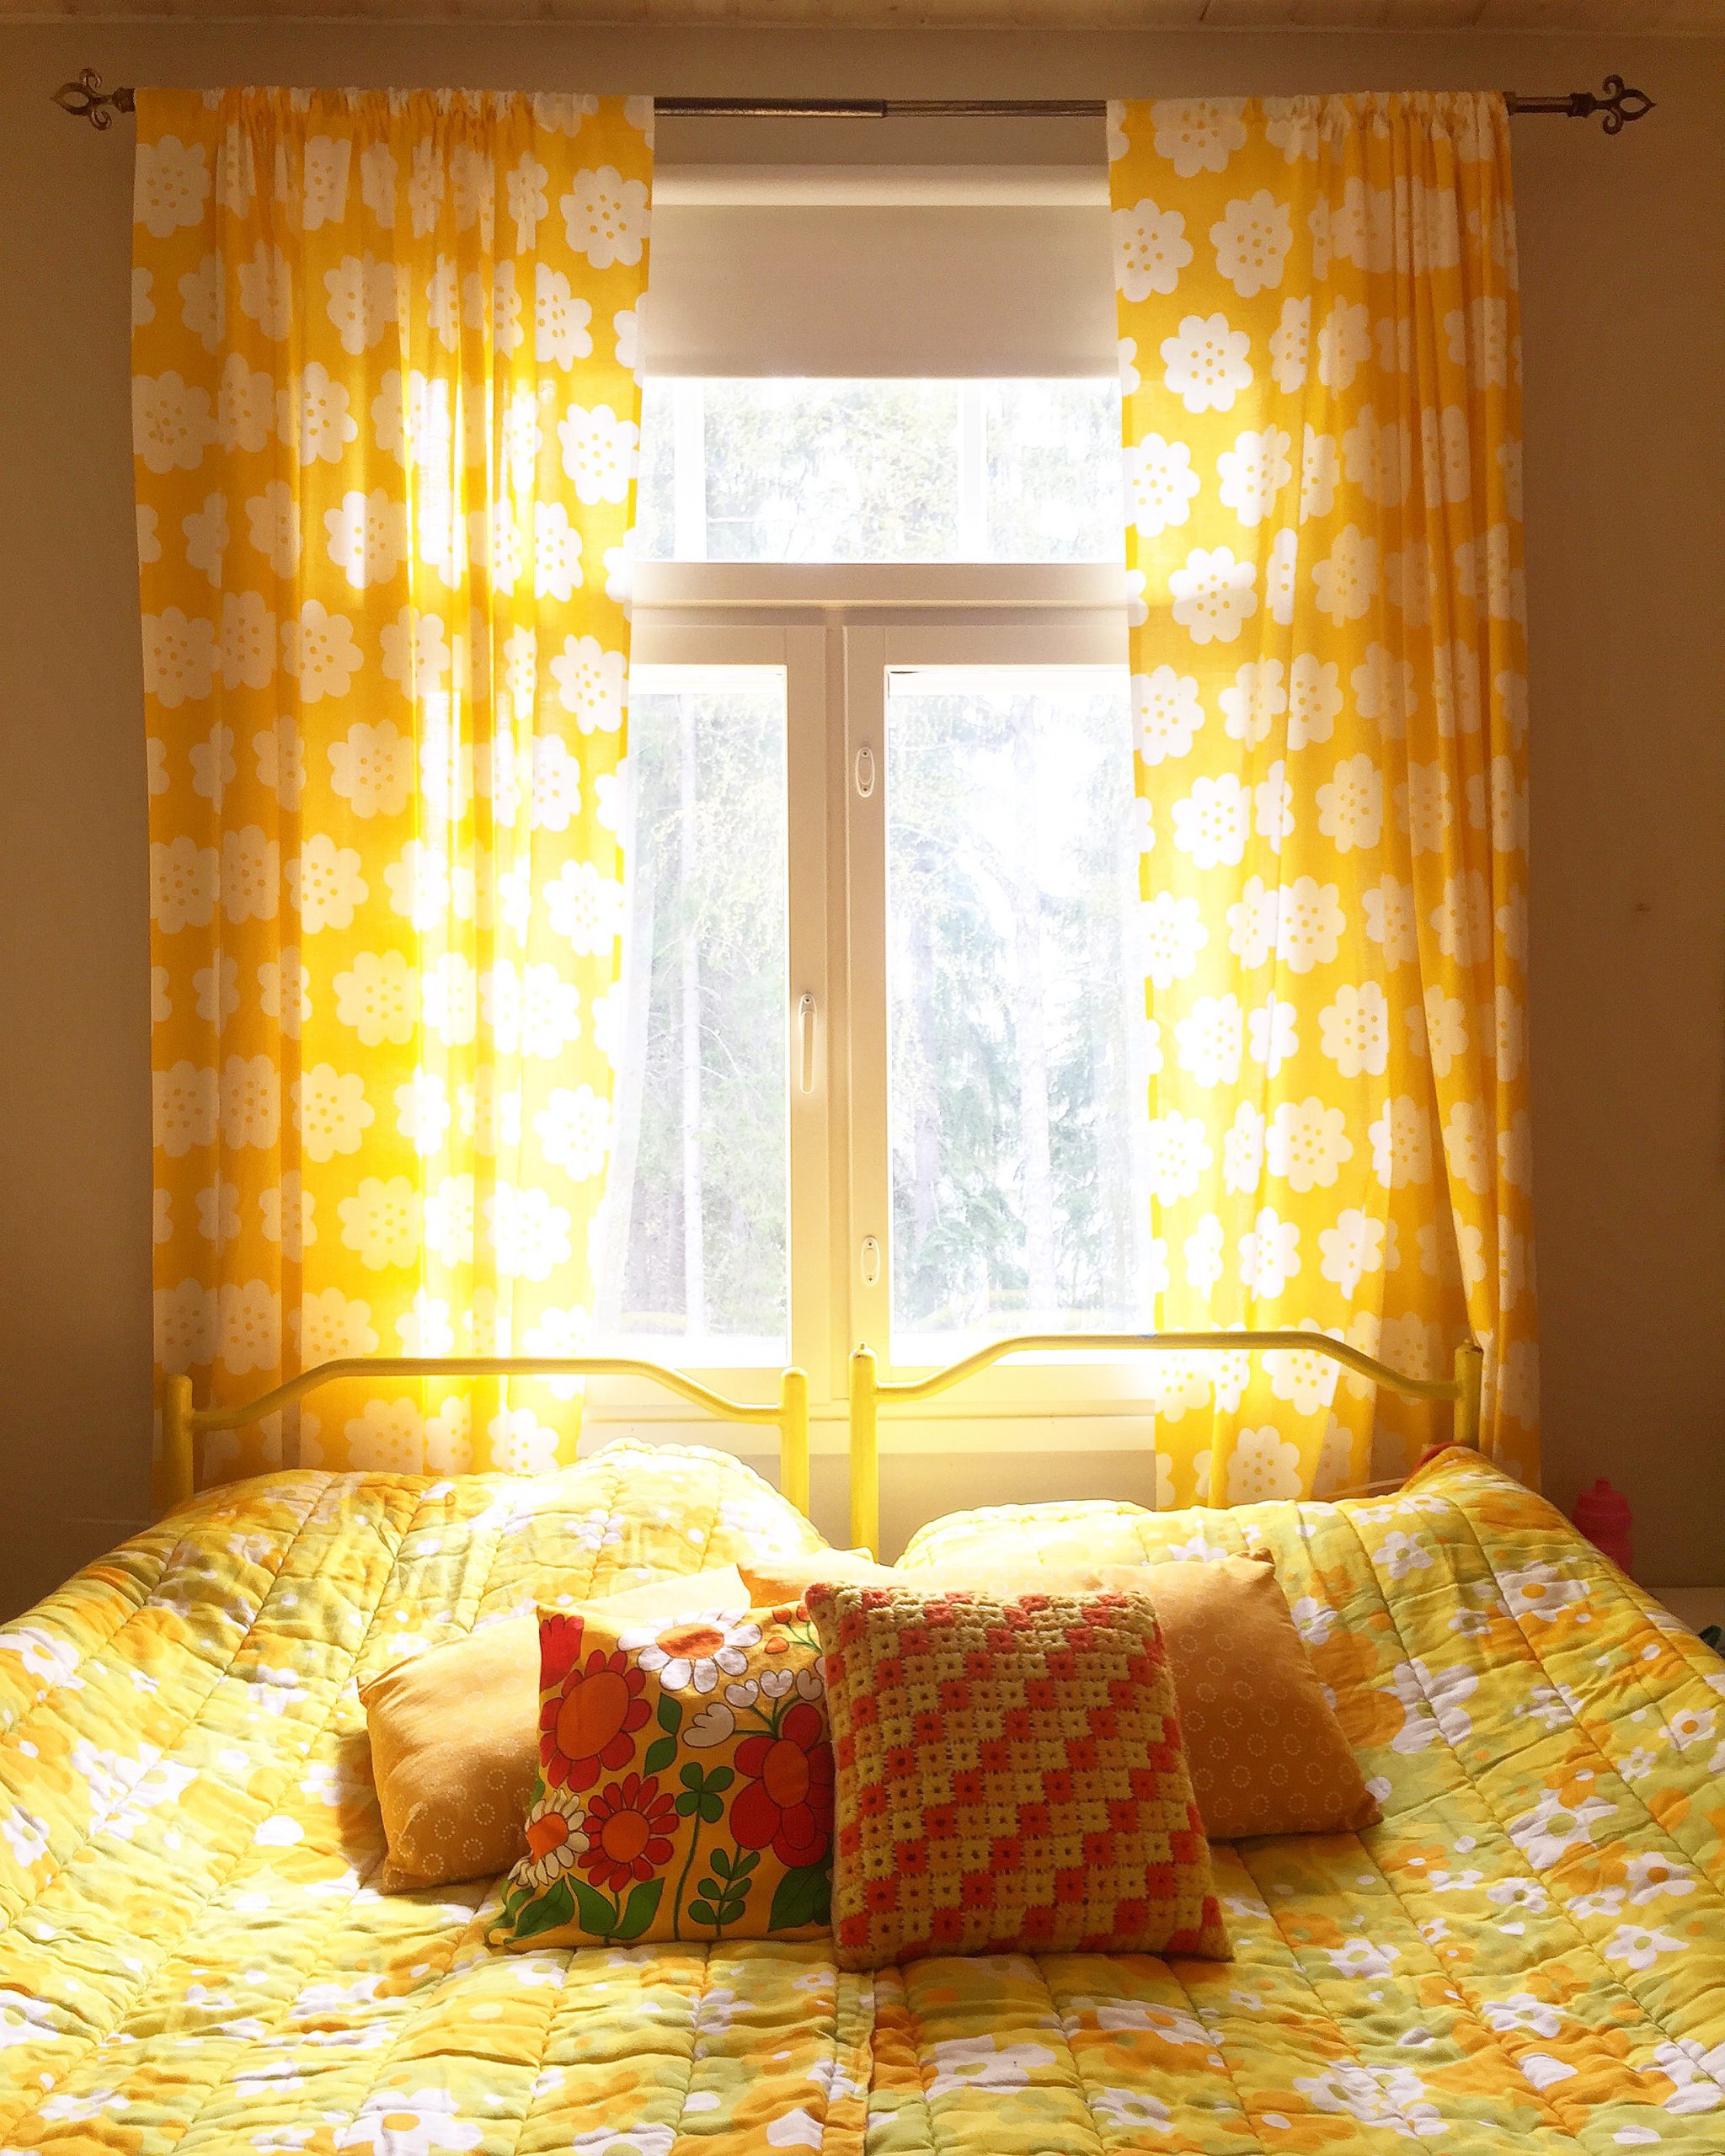 Elluyellow keltainen makuuhuone